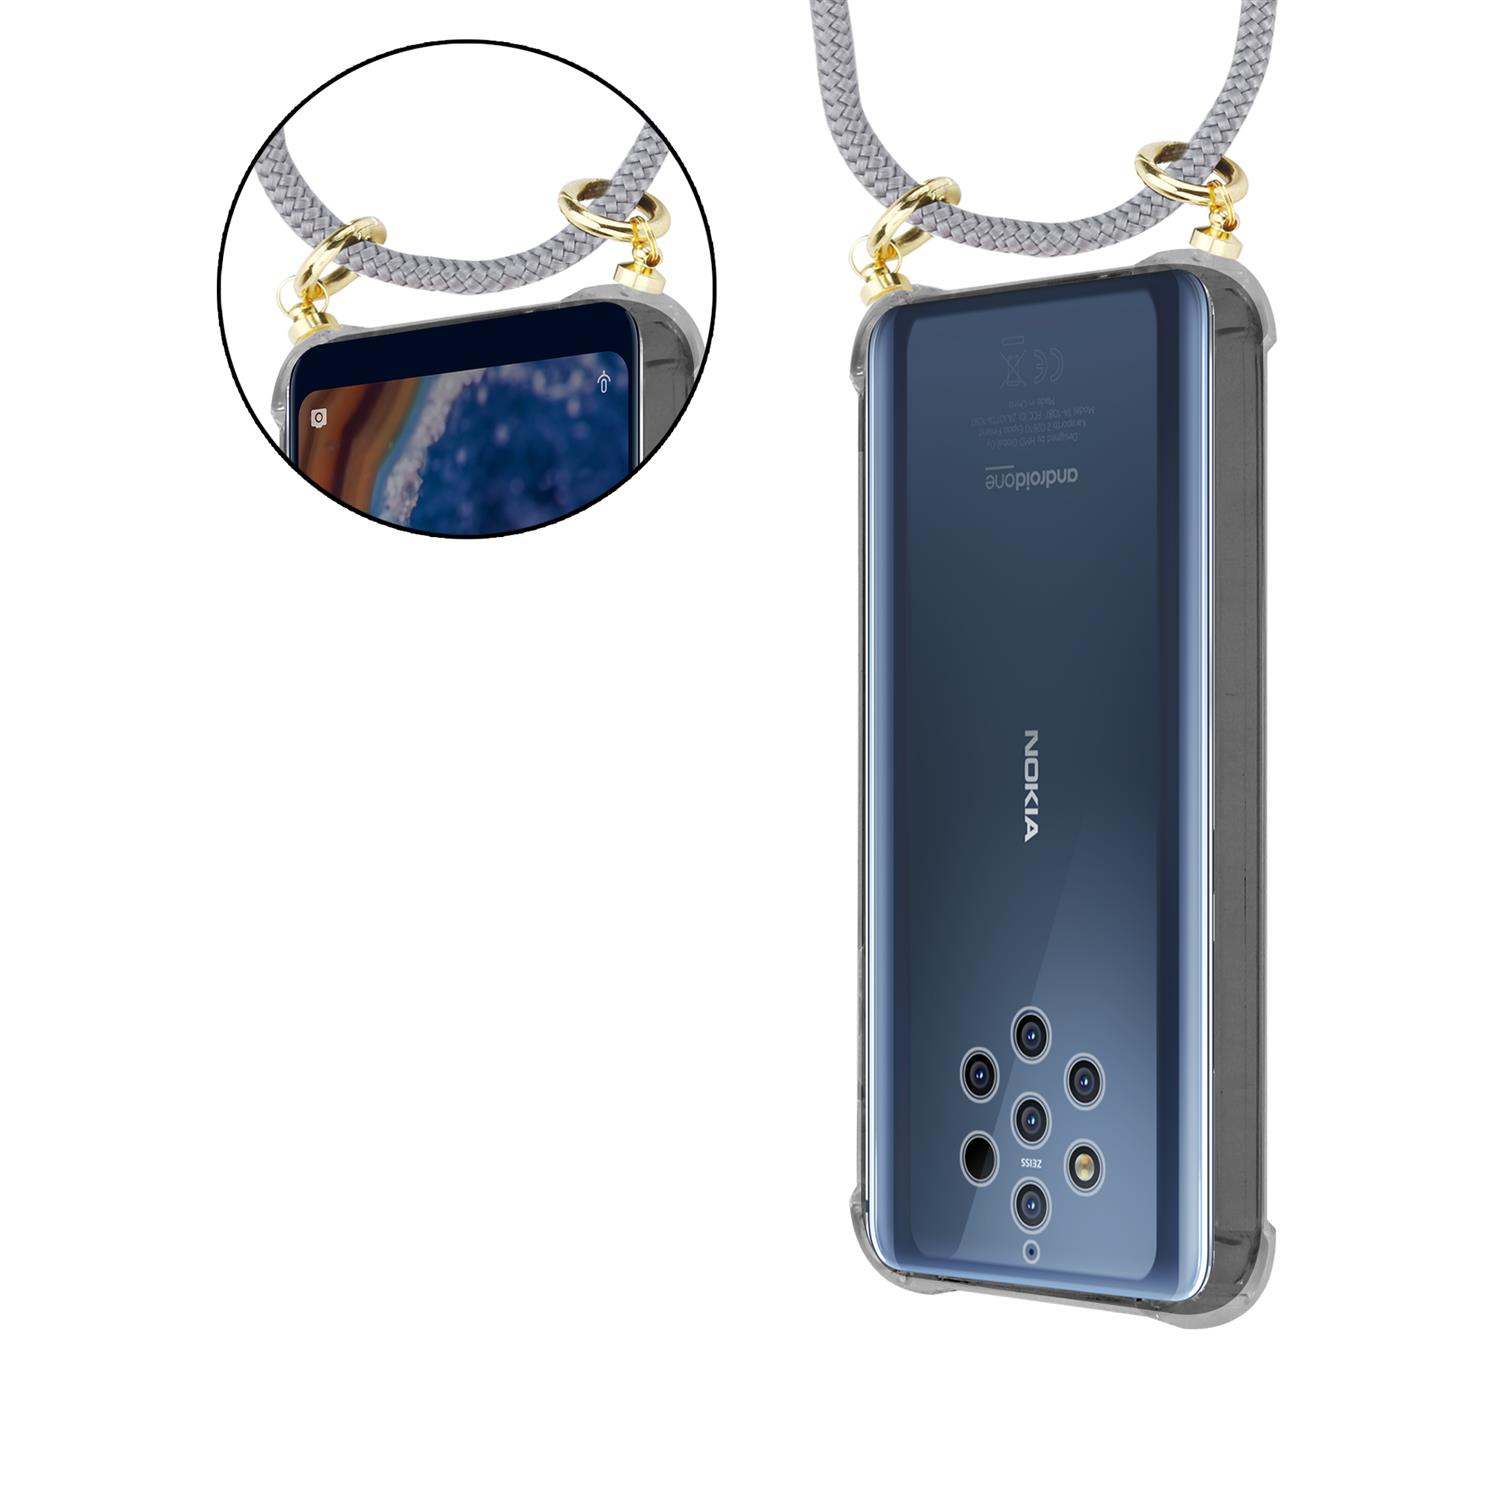 CADORABO Handy Kette mit Gold Kordel 2 Nokia, SILBER und 2017, Band abnehmbarer Backcover, GRAU Hülle, Ringen